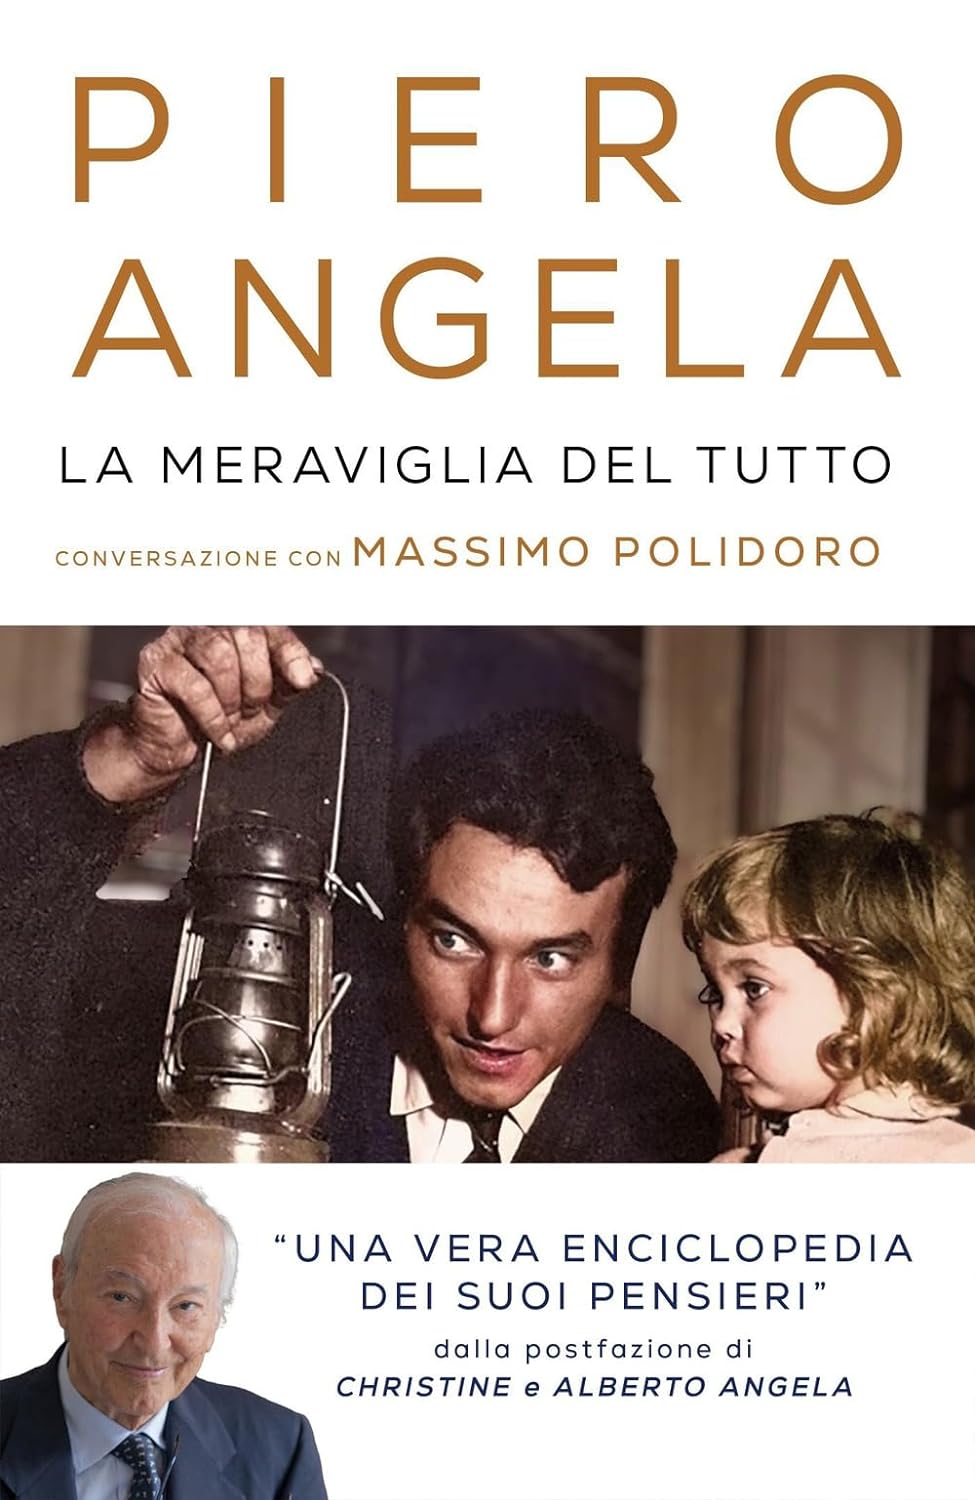 Piero Angela: La meraviglia del tutto (Hardcover, Italiano language, Mondadori)